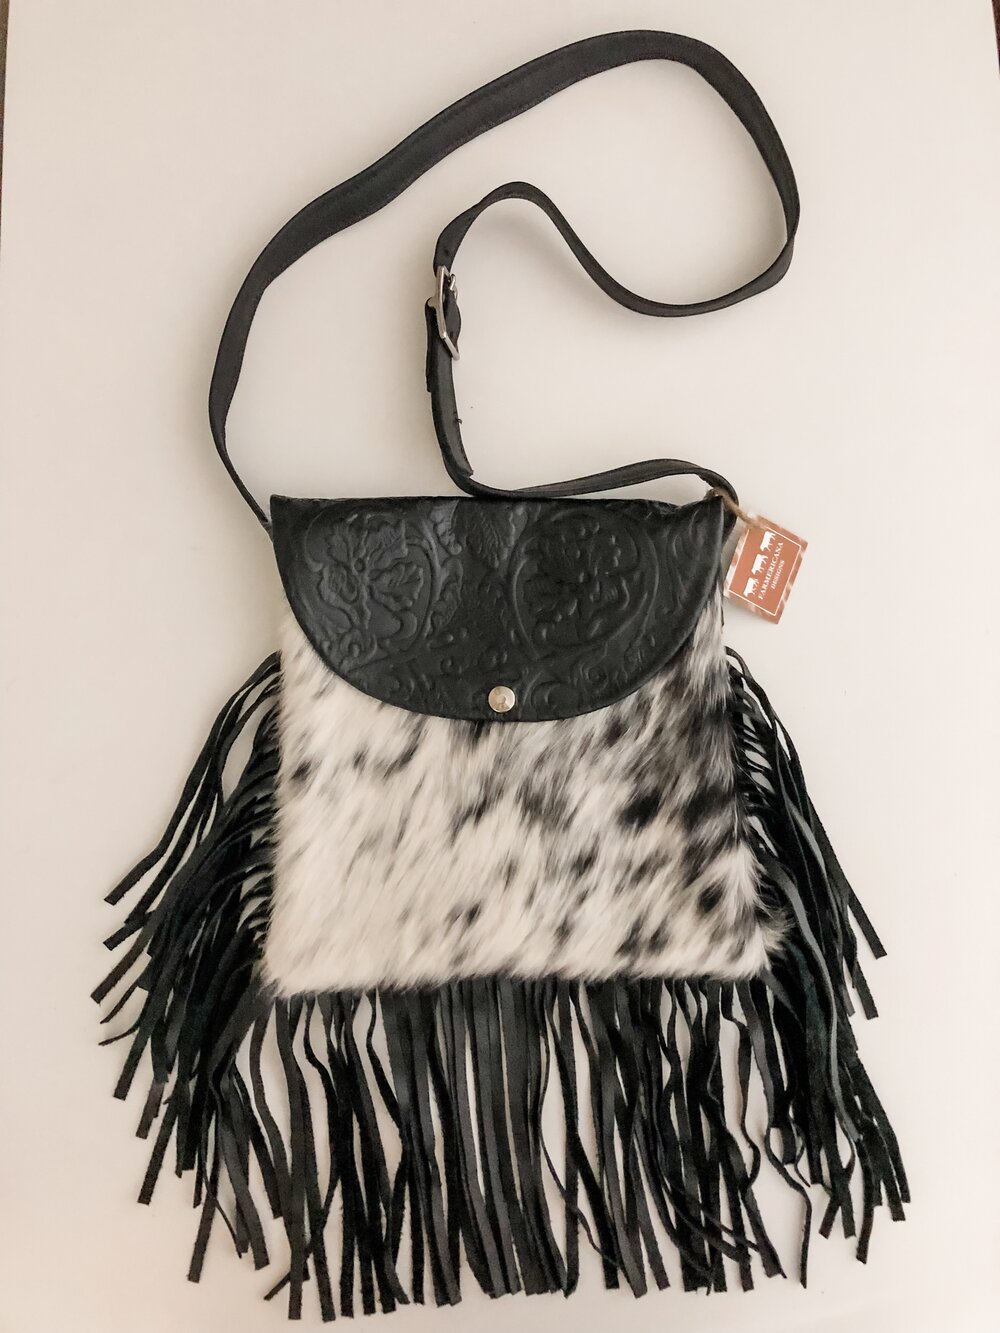 Tricolor Brindle Cowhide Bag Strap — Farmericana Designs